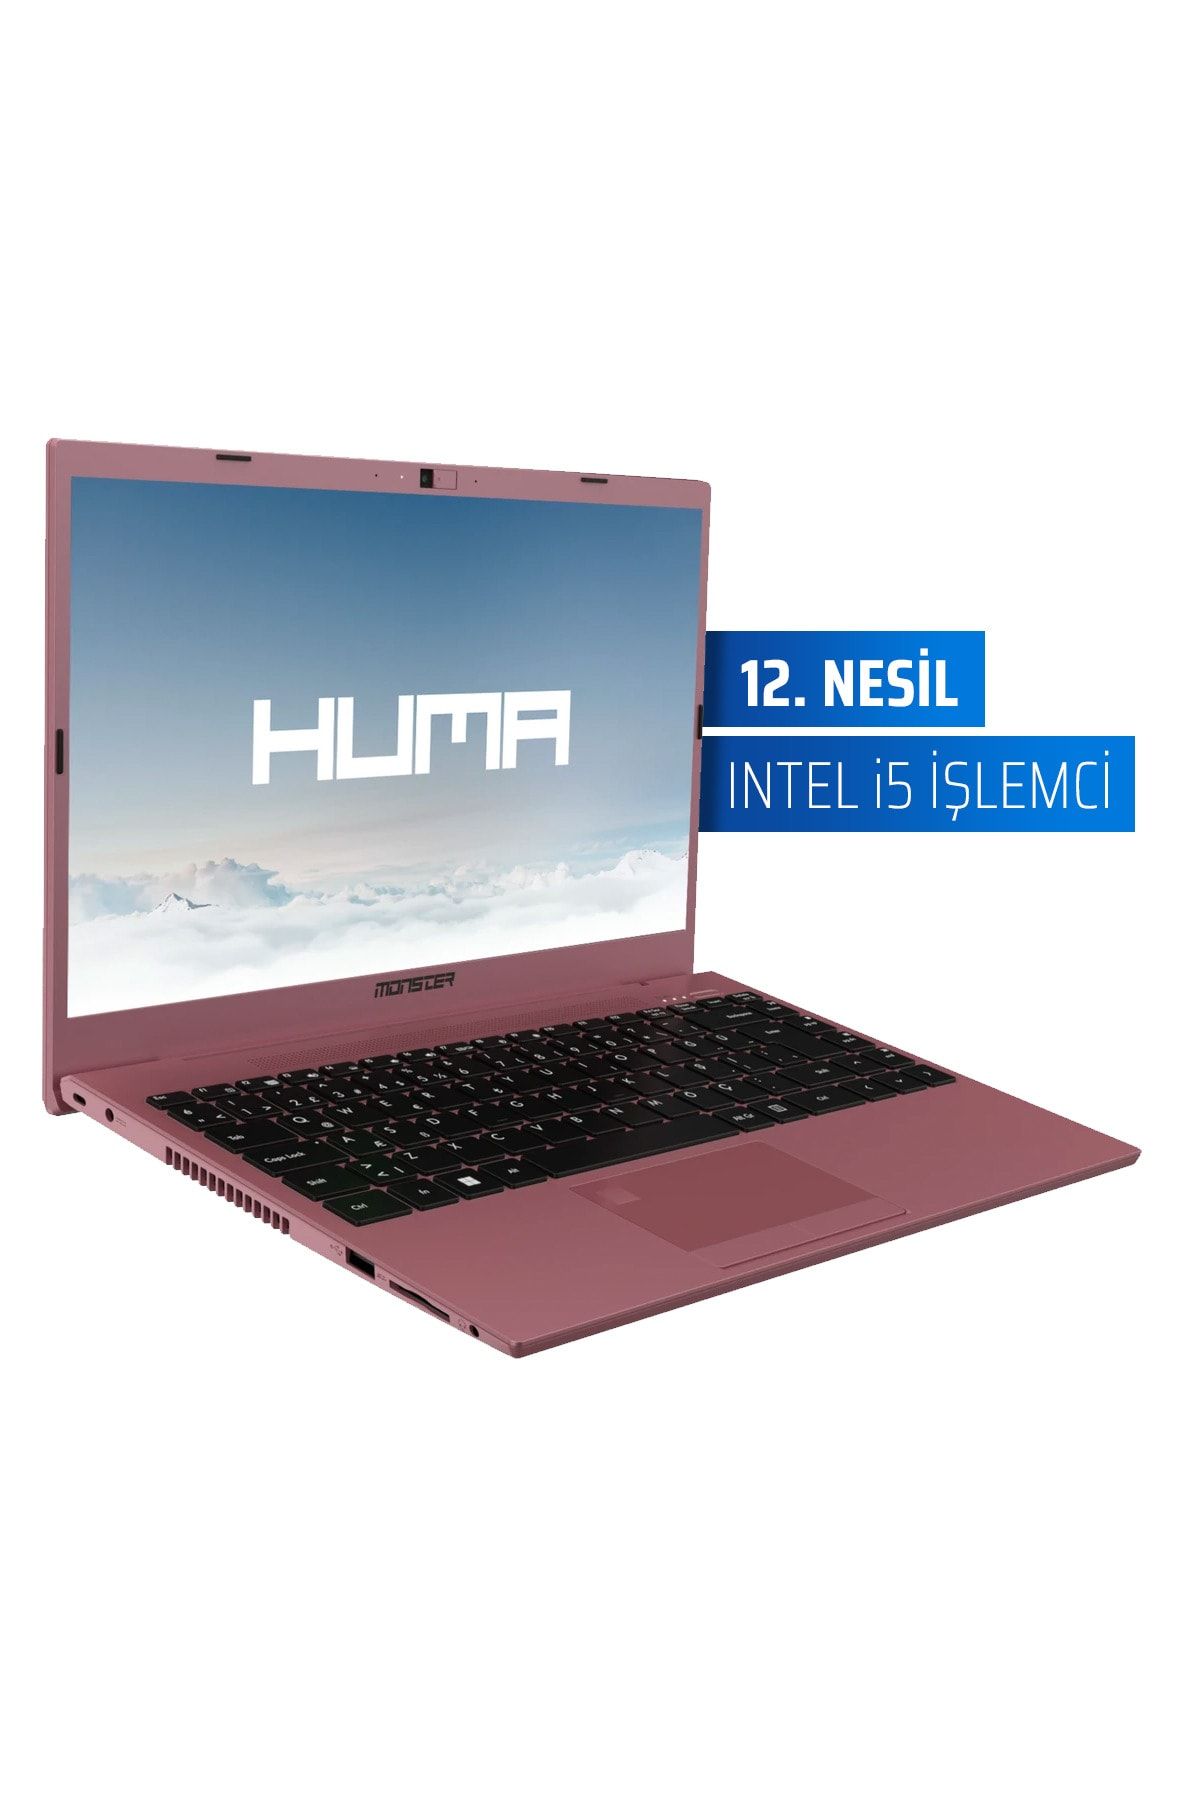 MONSTER Huma H4 V5.1.4 Notebook Rose Gold 14.1''